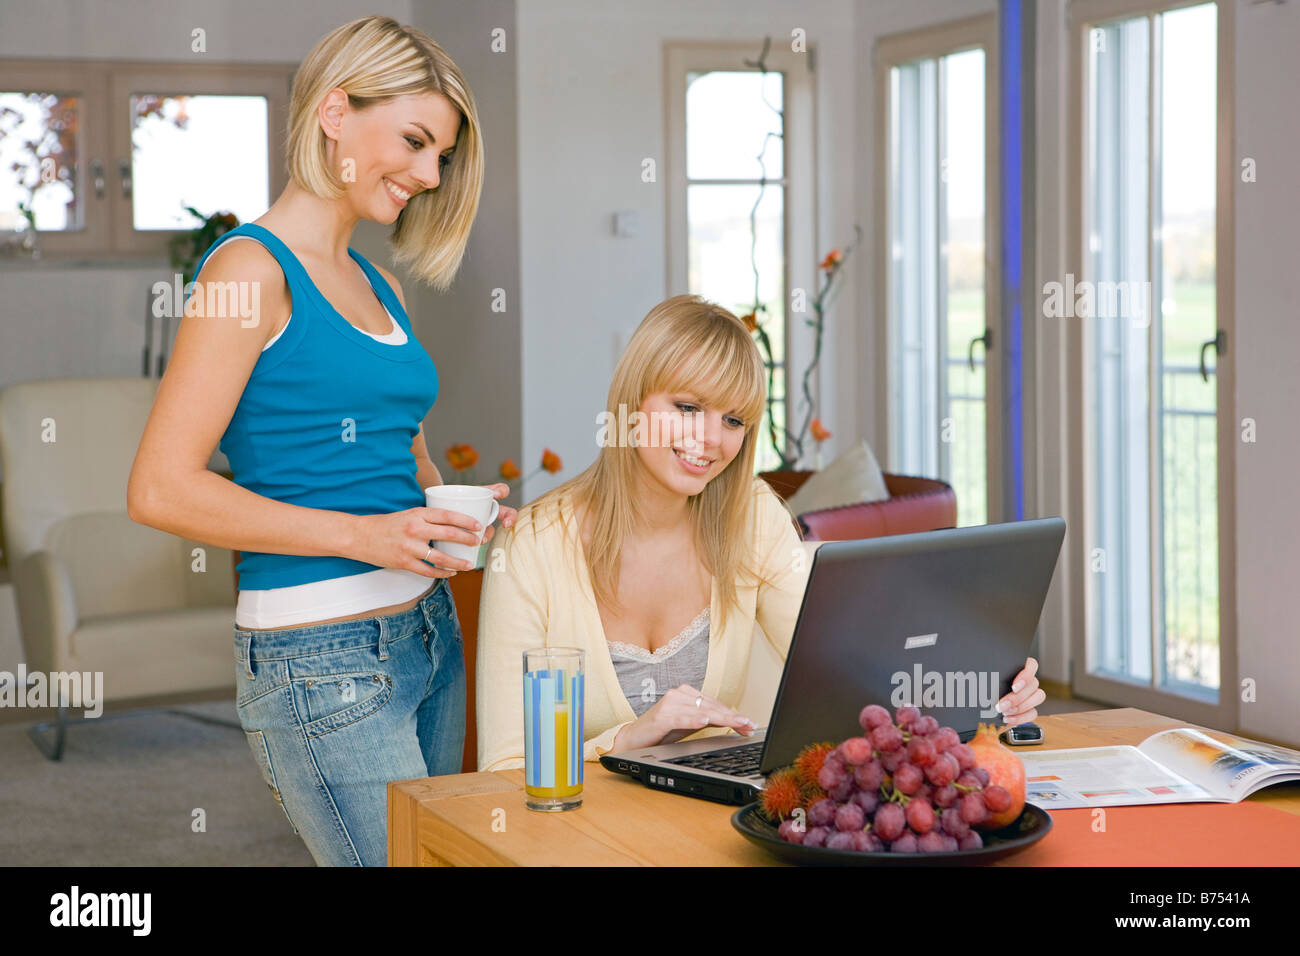 Zwei Frauen Surfen Zusammen Im Internet, zwei Frauen, die gemeinsam im Internet surfen Stockfoto